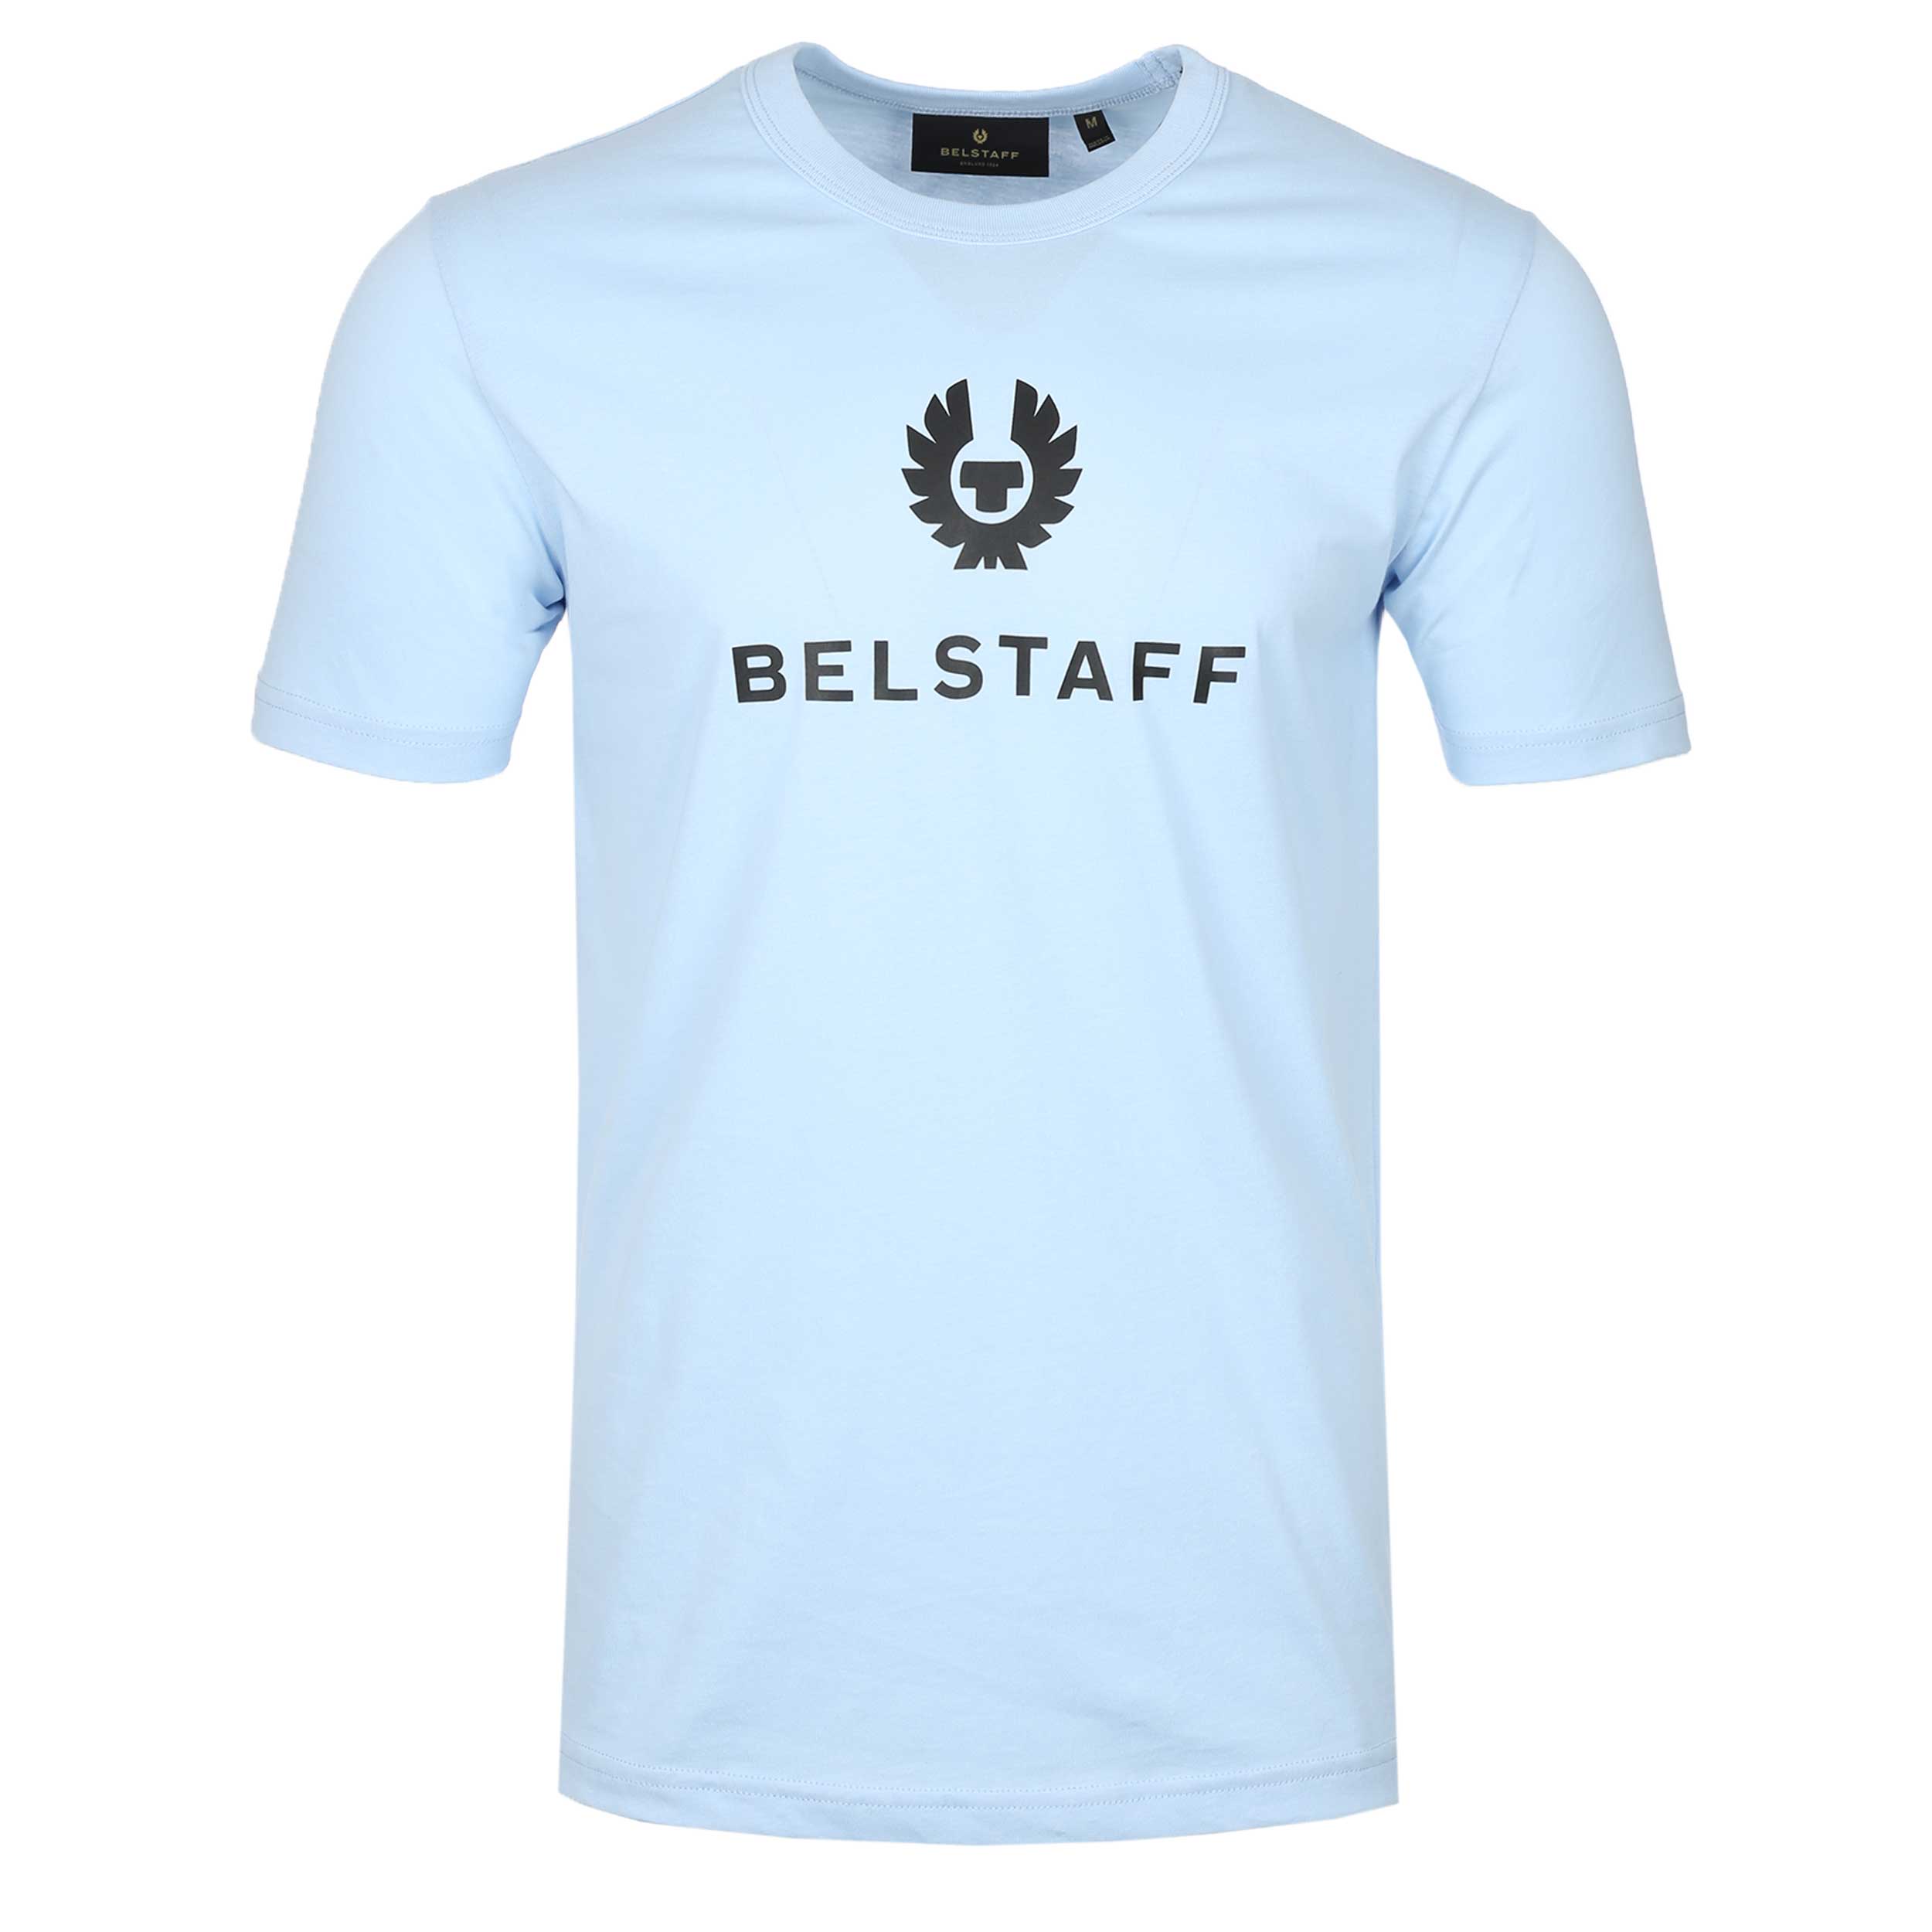 Belstaff Signature T Shirt in Sky Blue